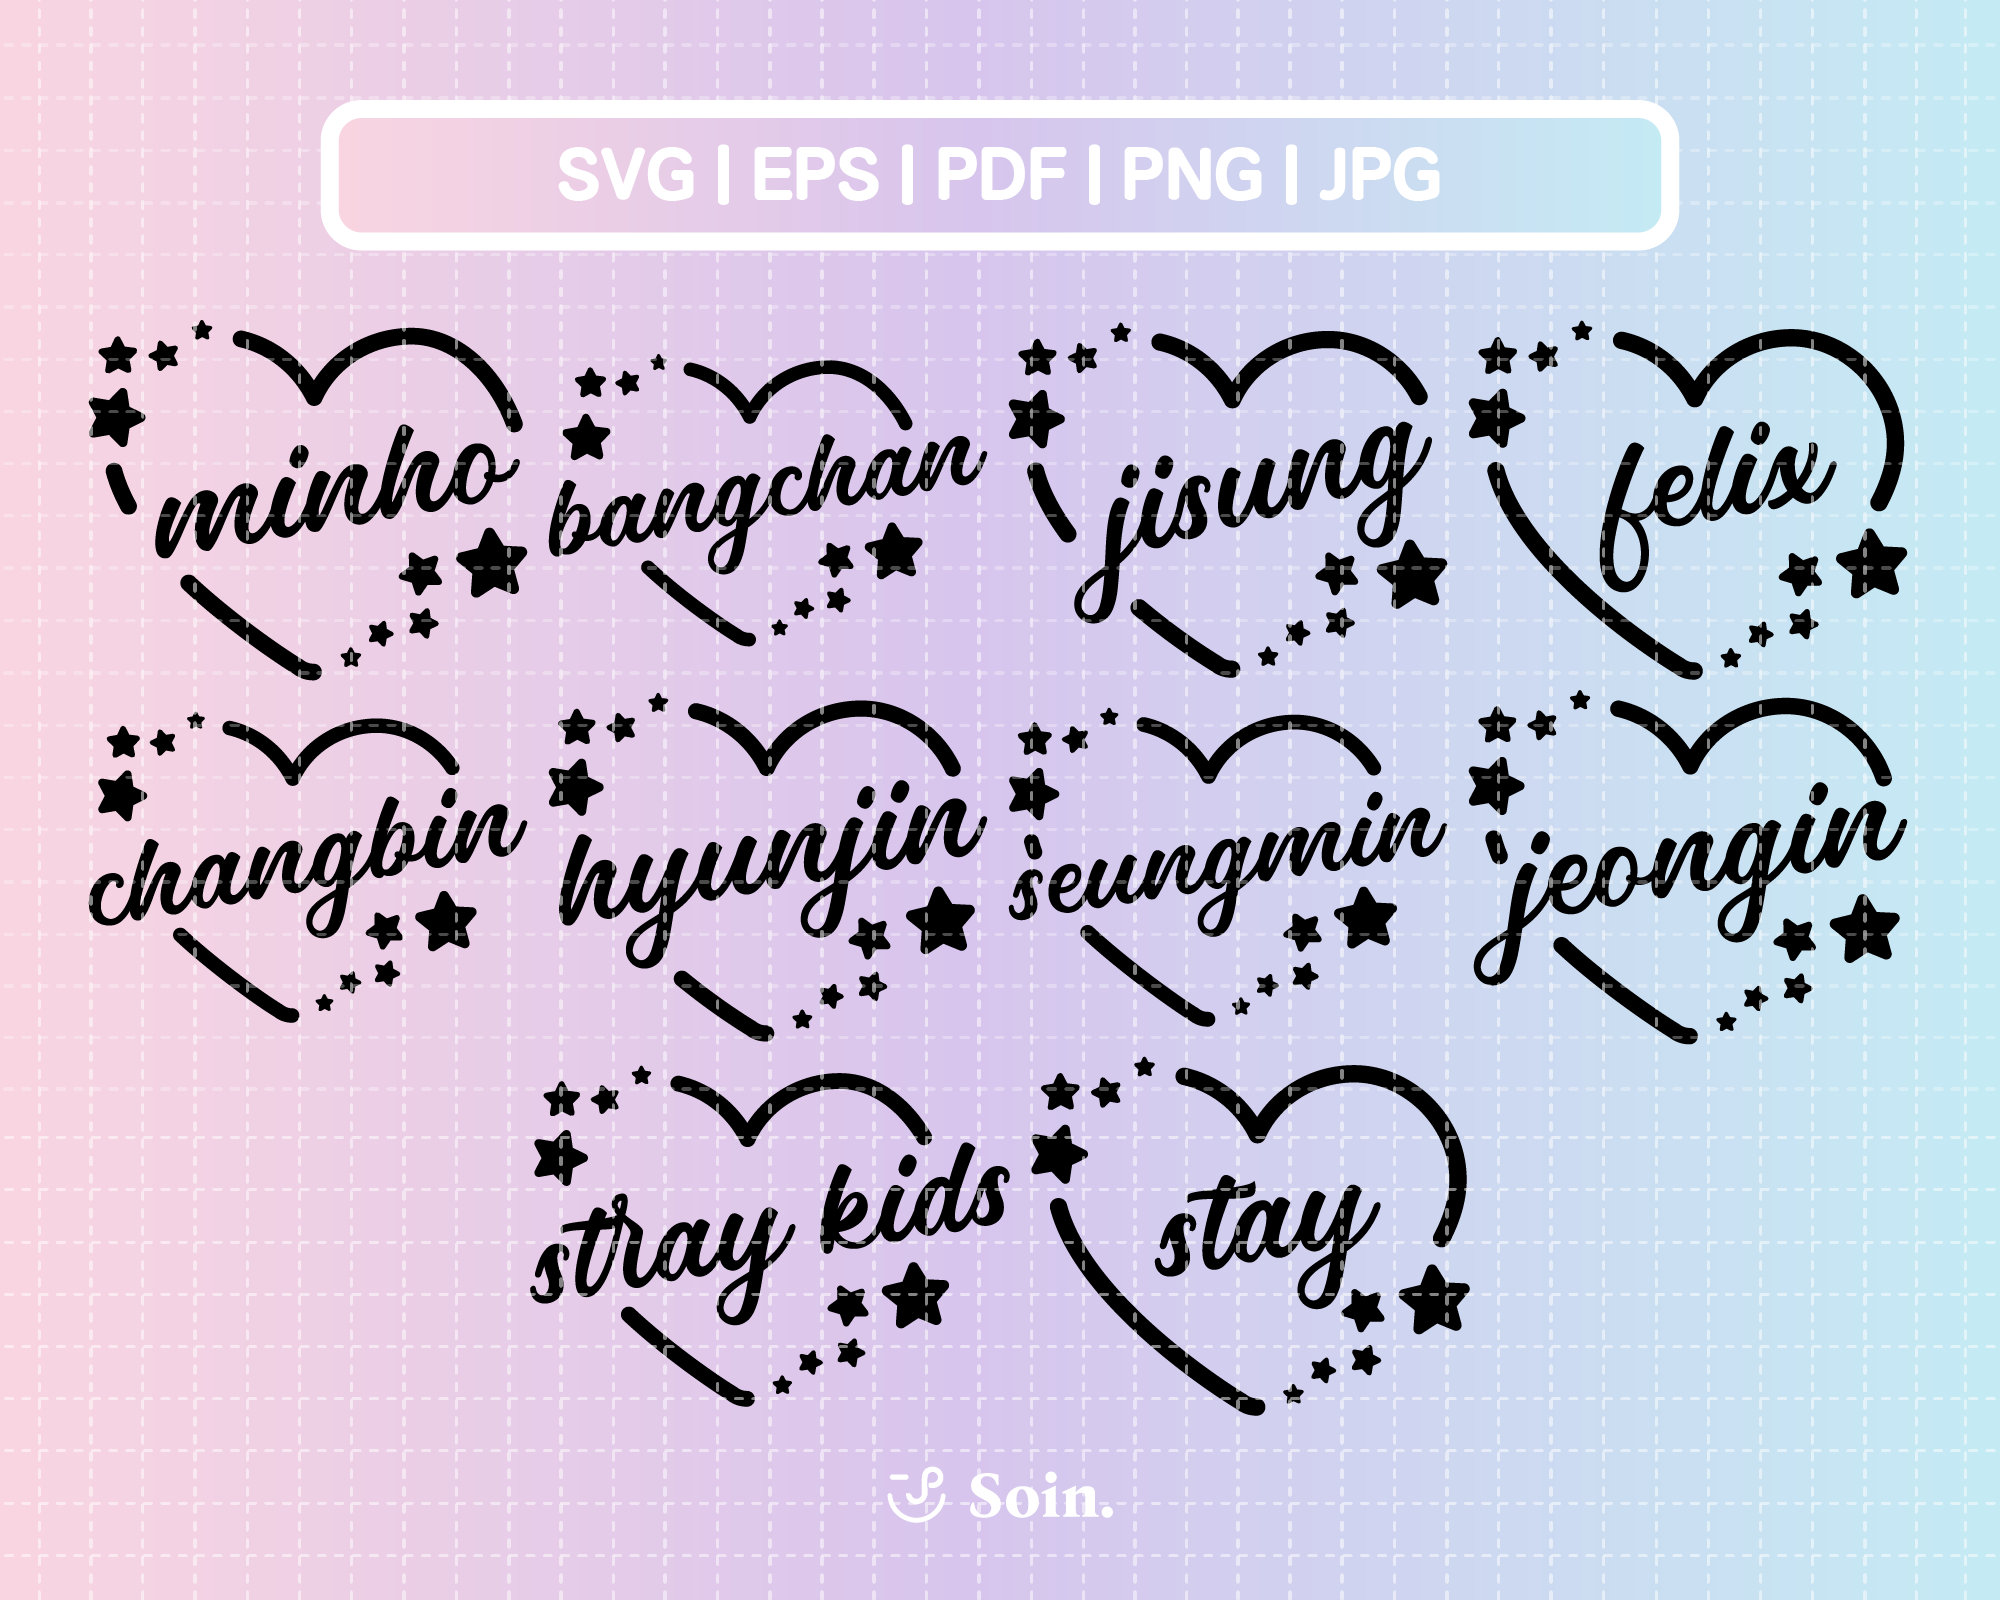 STRAY KIDS Hangul LIGHTSTICK Decals / Nachimbong /light Stick Stickers / Stray  Kids Sticker / Personalize Your Lightstick / Kpop Decals -  Norway